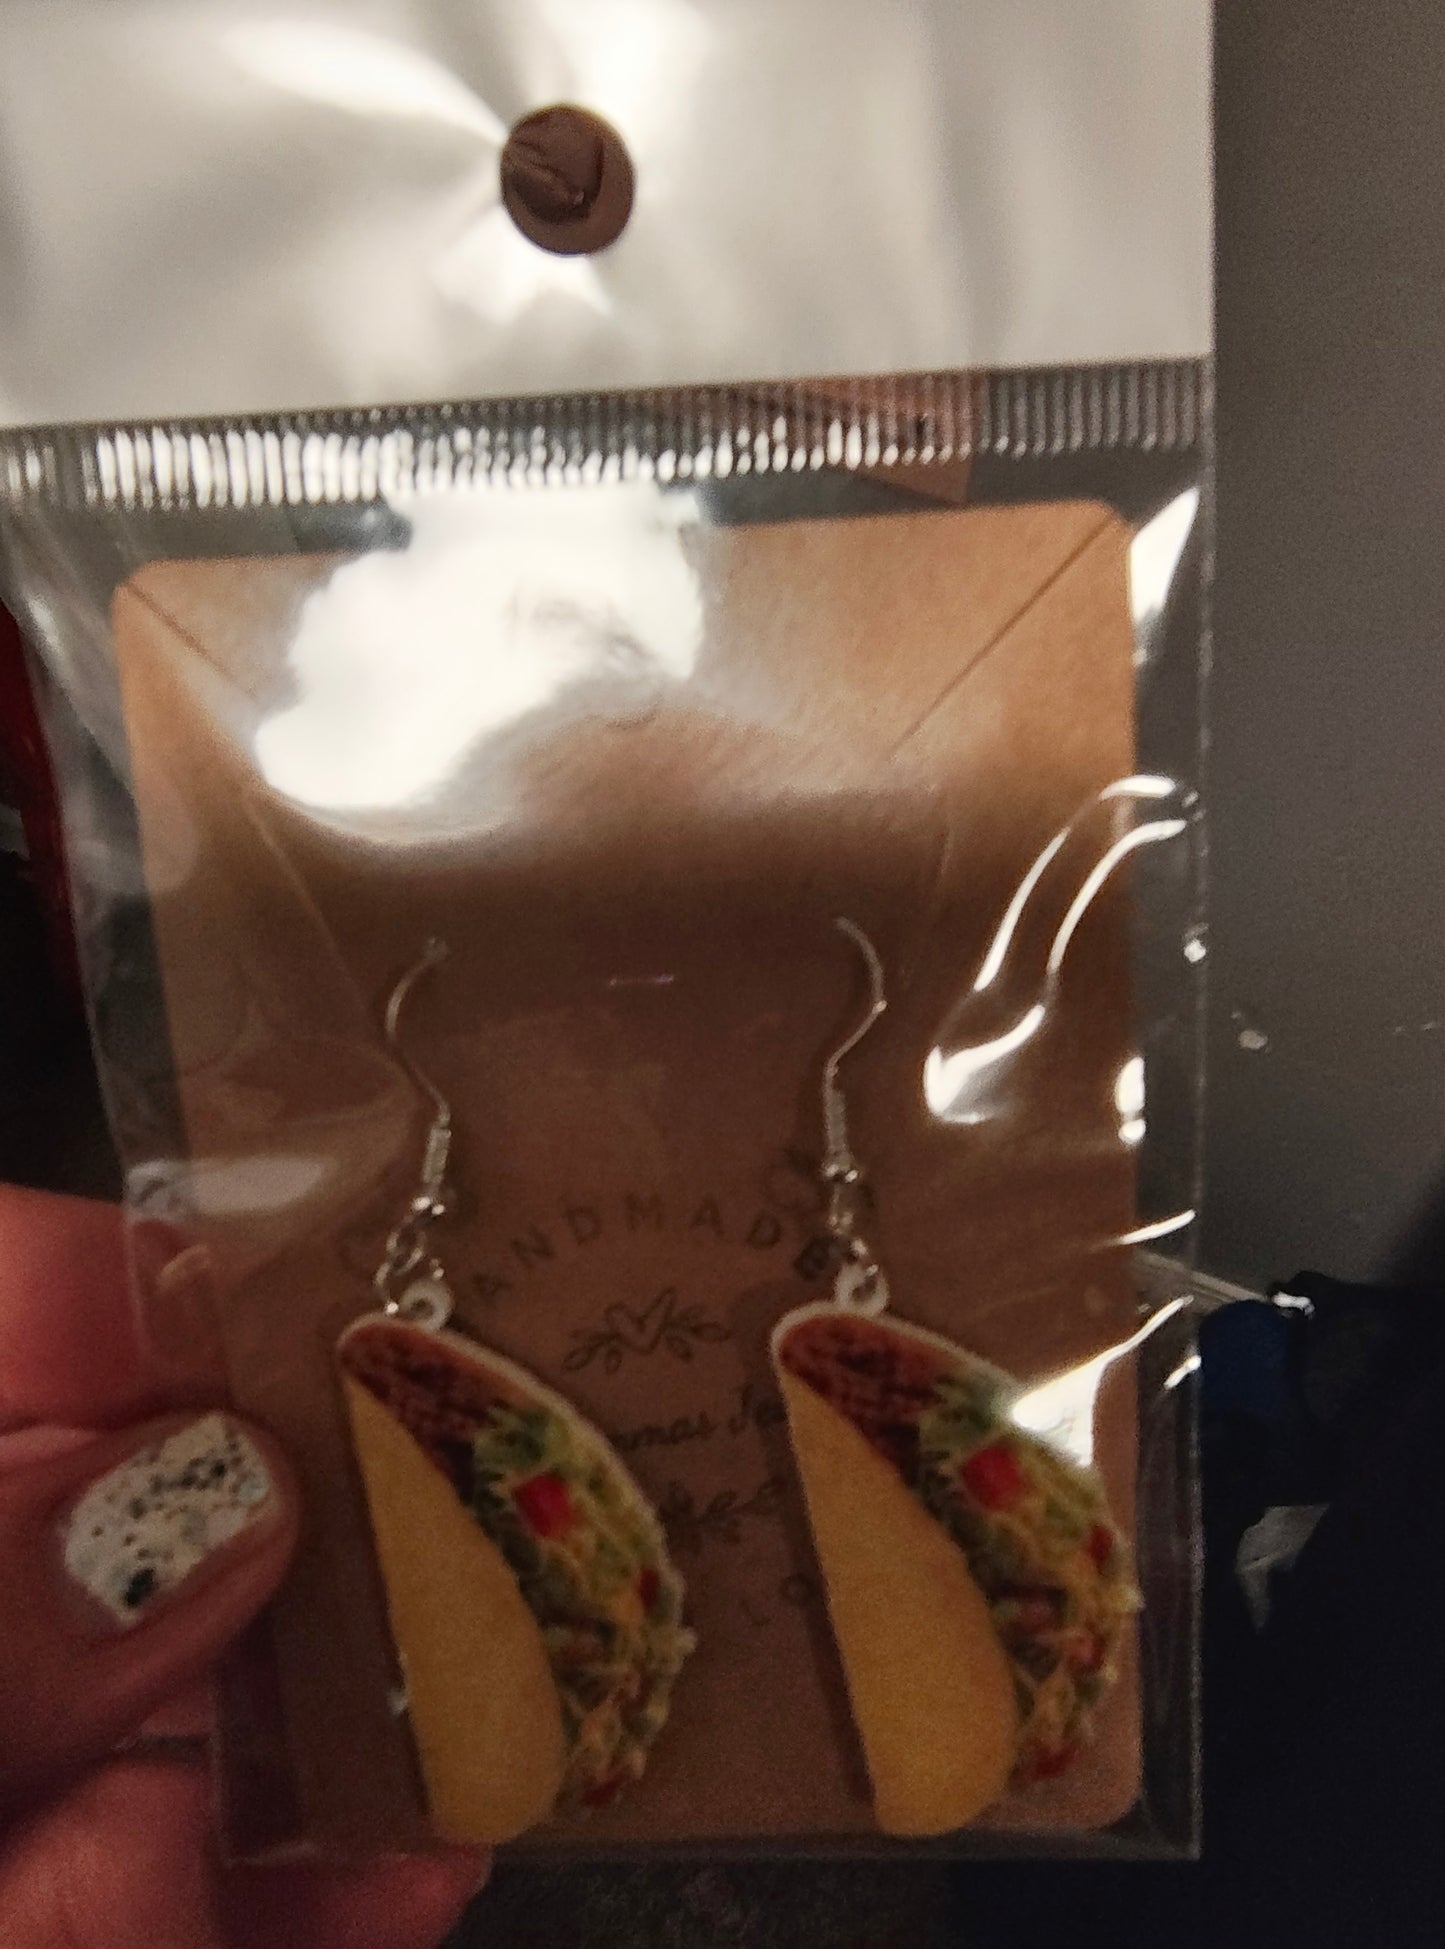 Taco Earrings